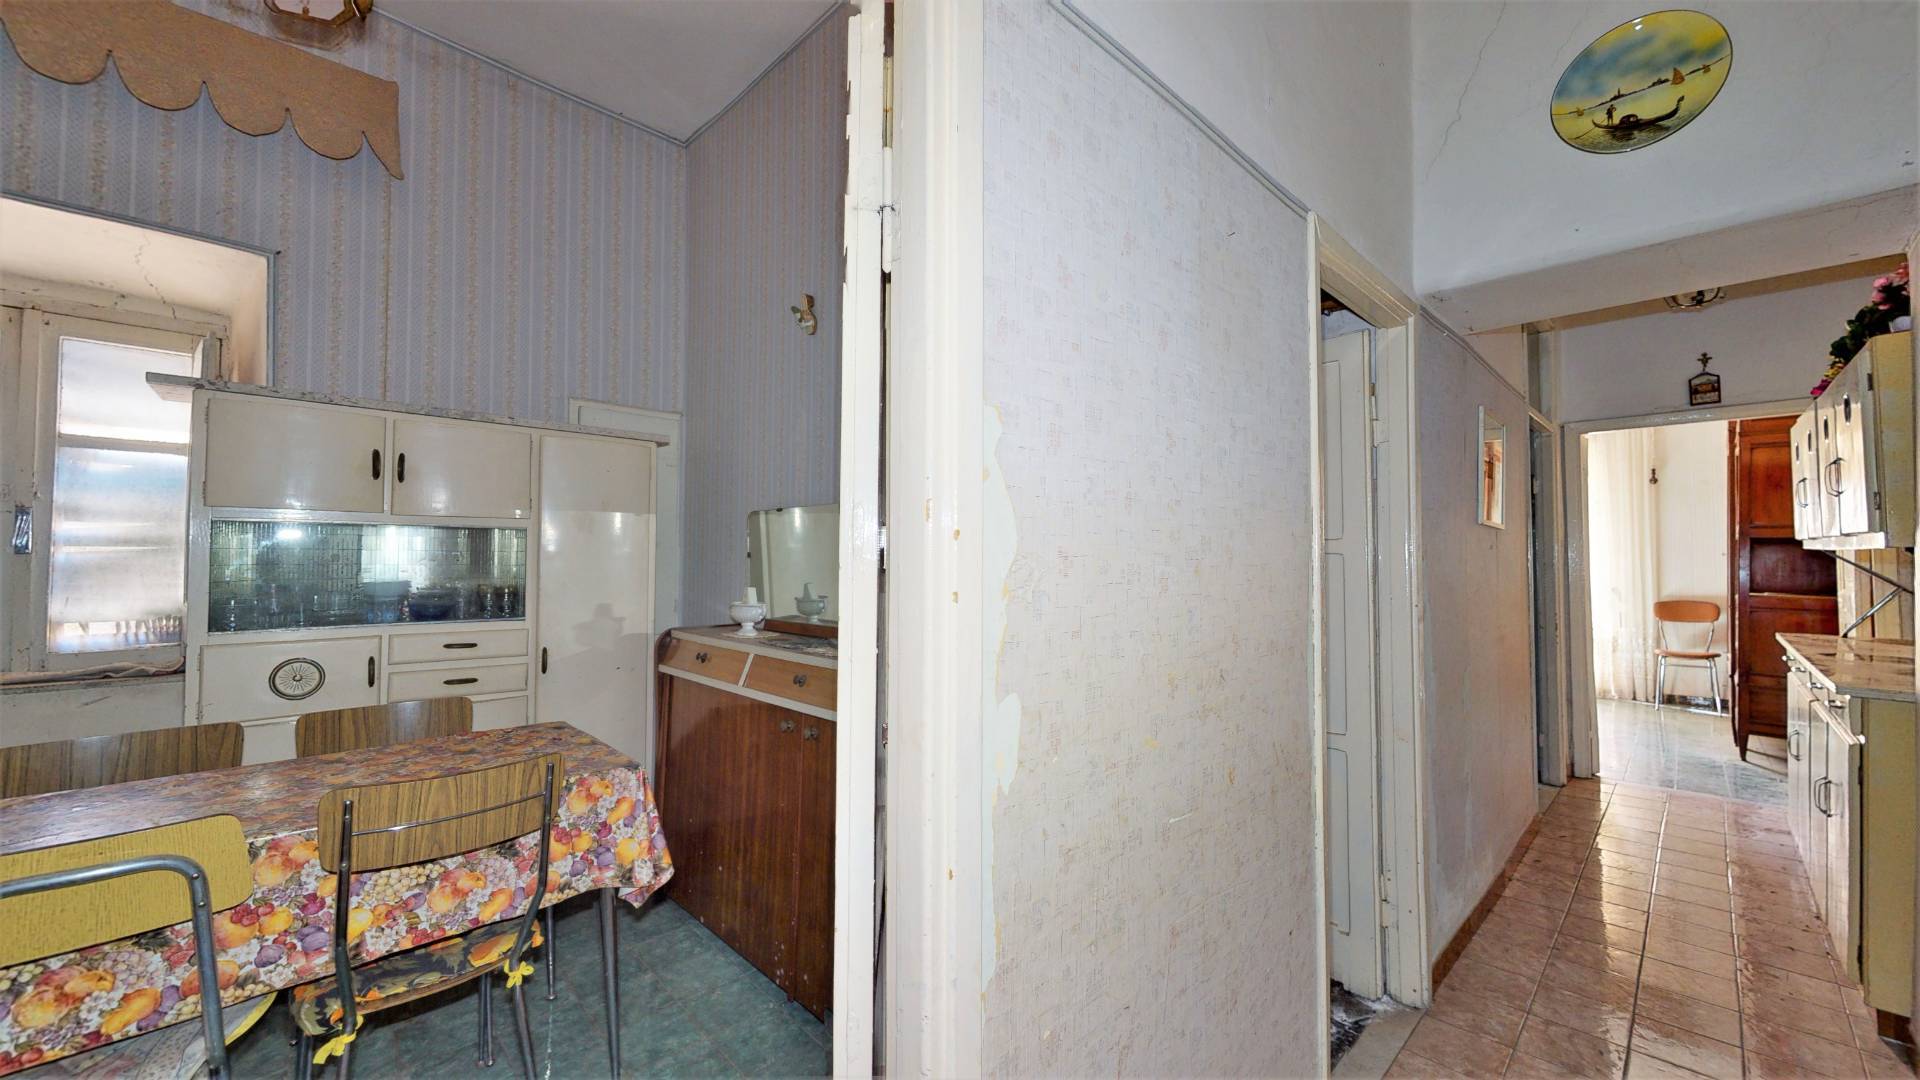 Appartamento in vendita a Colonna, 2 locali, prezzo € 50.000 | CambioCasa.it